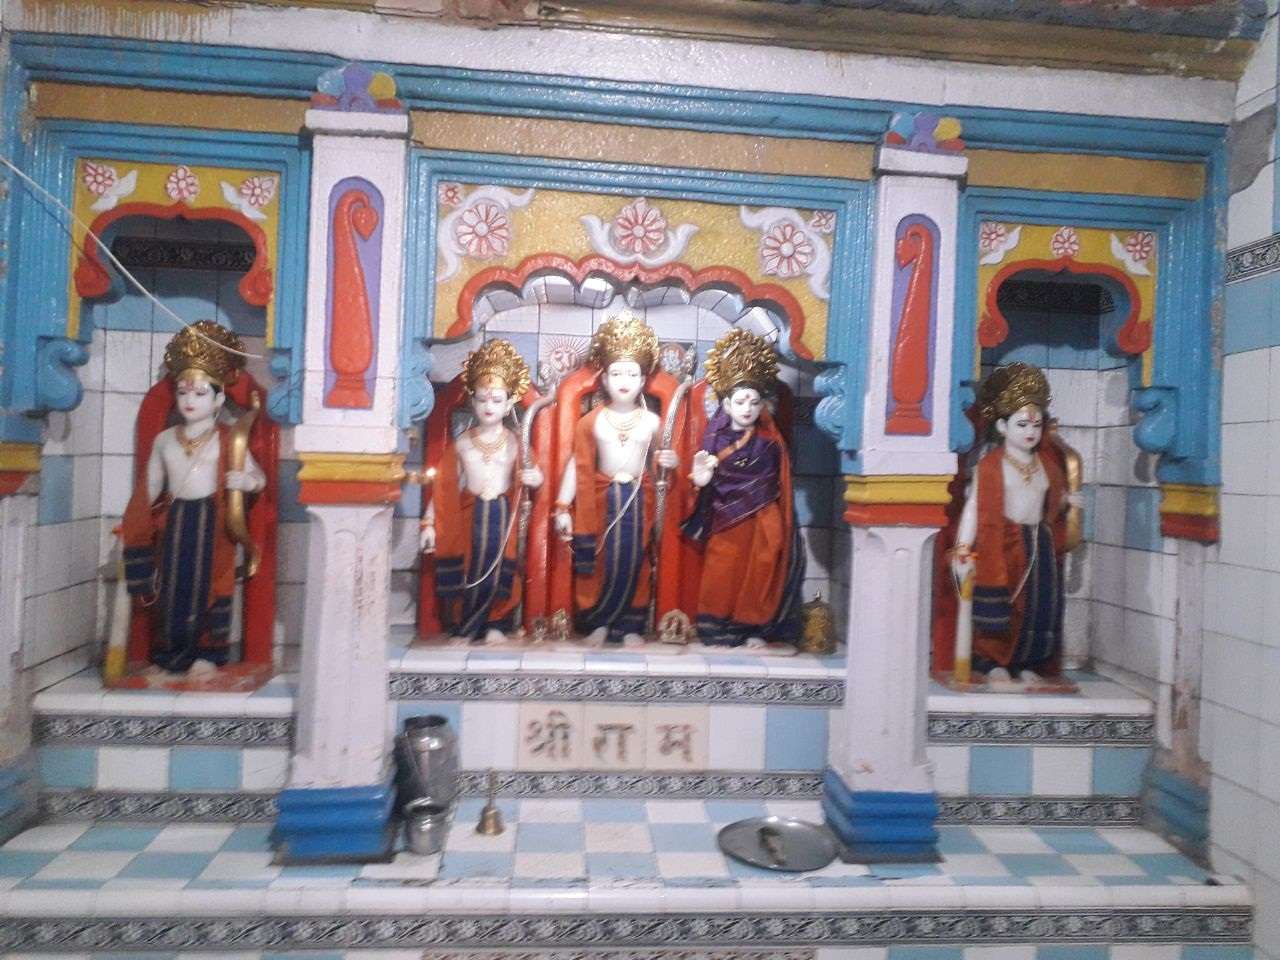 हुब्बल्ली के कमरीपेट का श्रीराम मंदिर, अयोध्या के श्रीराम मंदिर की तर्ज पर
जीर्णोद्वार की योजना